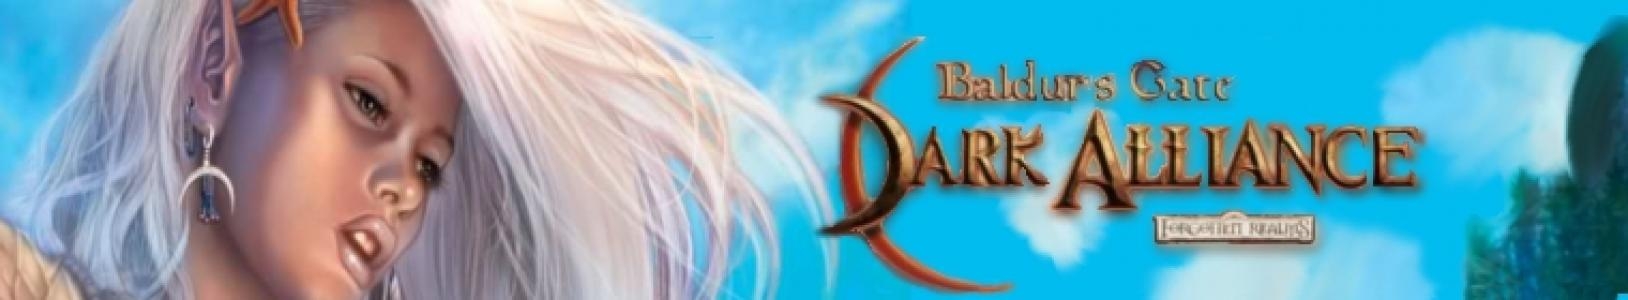 Baldur's Gate: Dark Alliance banner